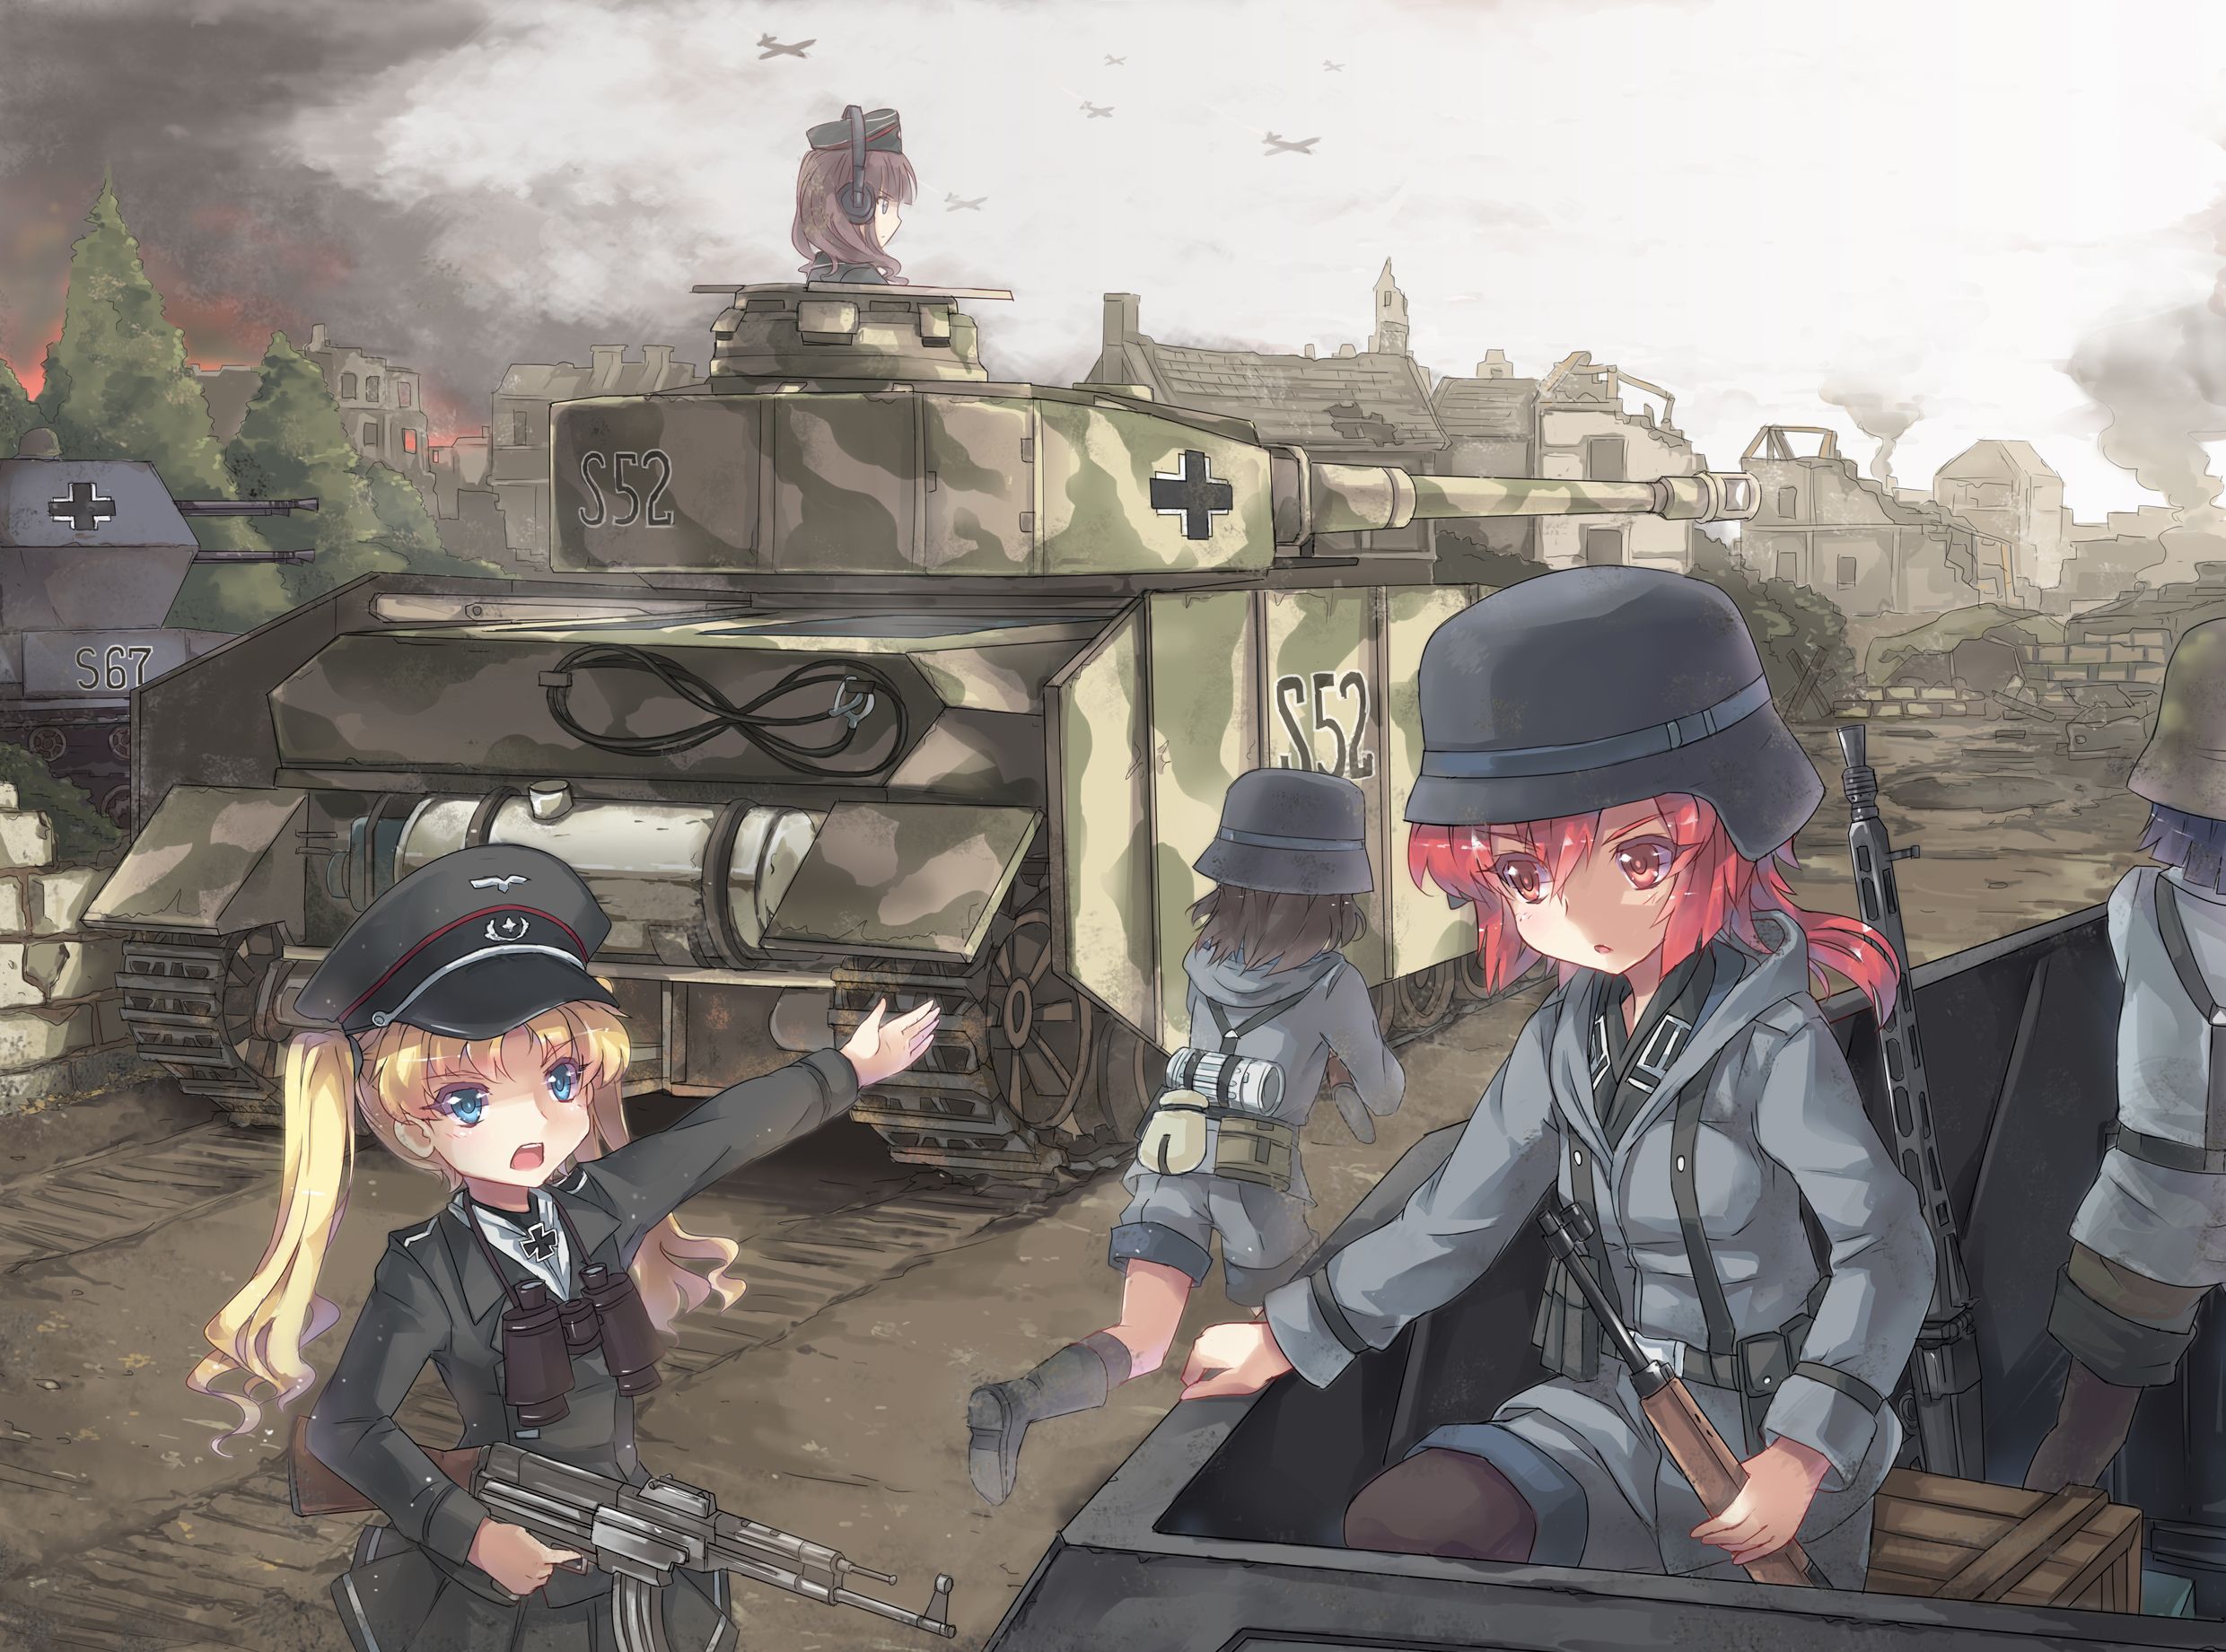 Panzer Wallpaper. Panzer Wallpaper